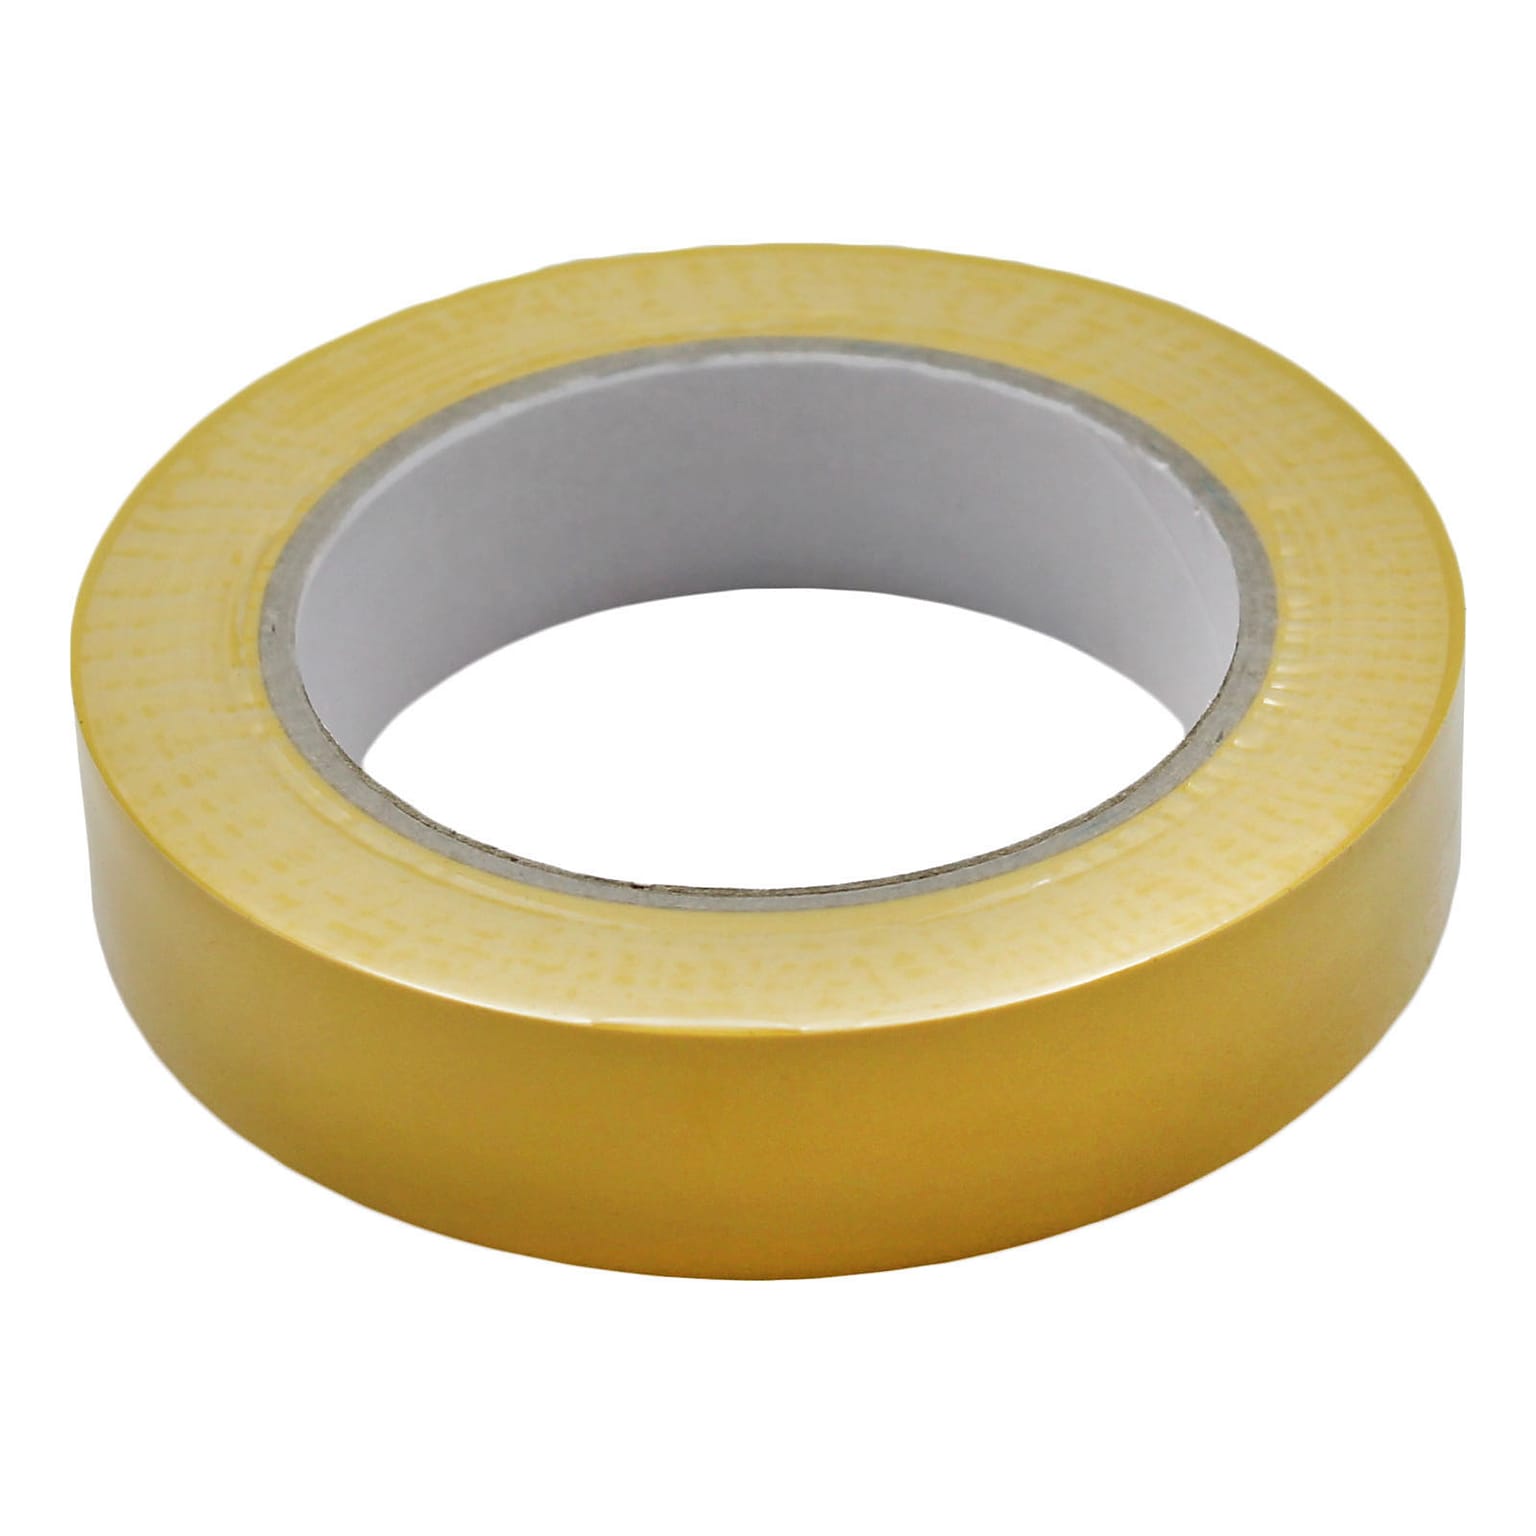 Martin Sports® Equipment Floor Marking Tape, Yellow (MASFT136YELLOW)